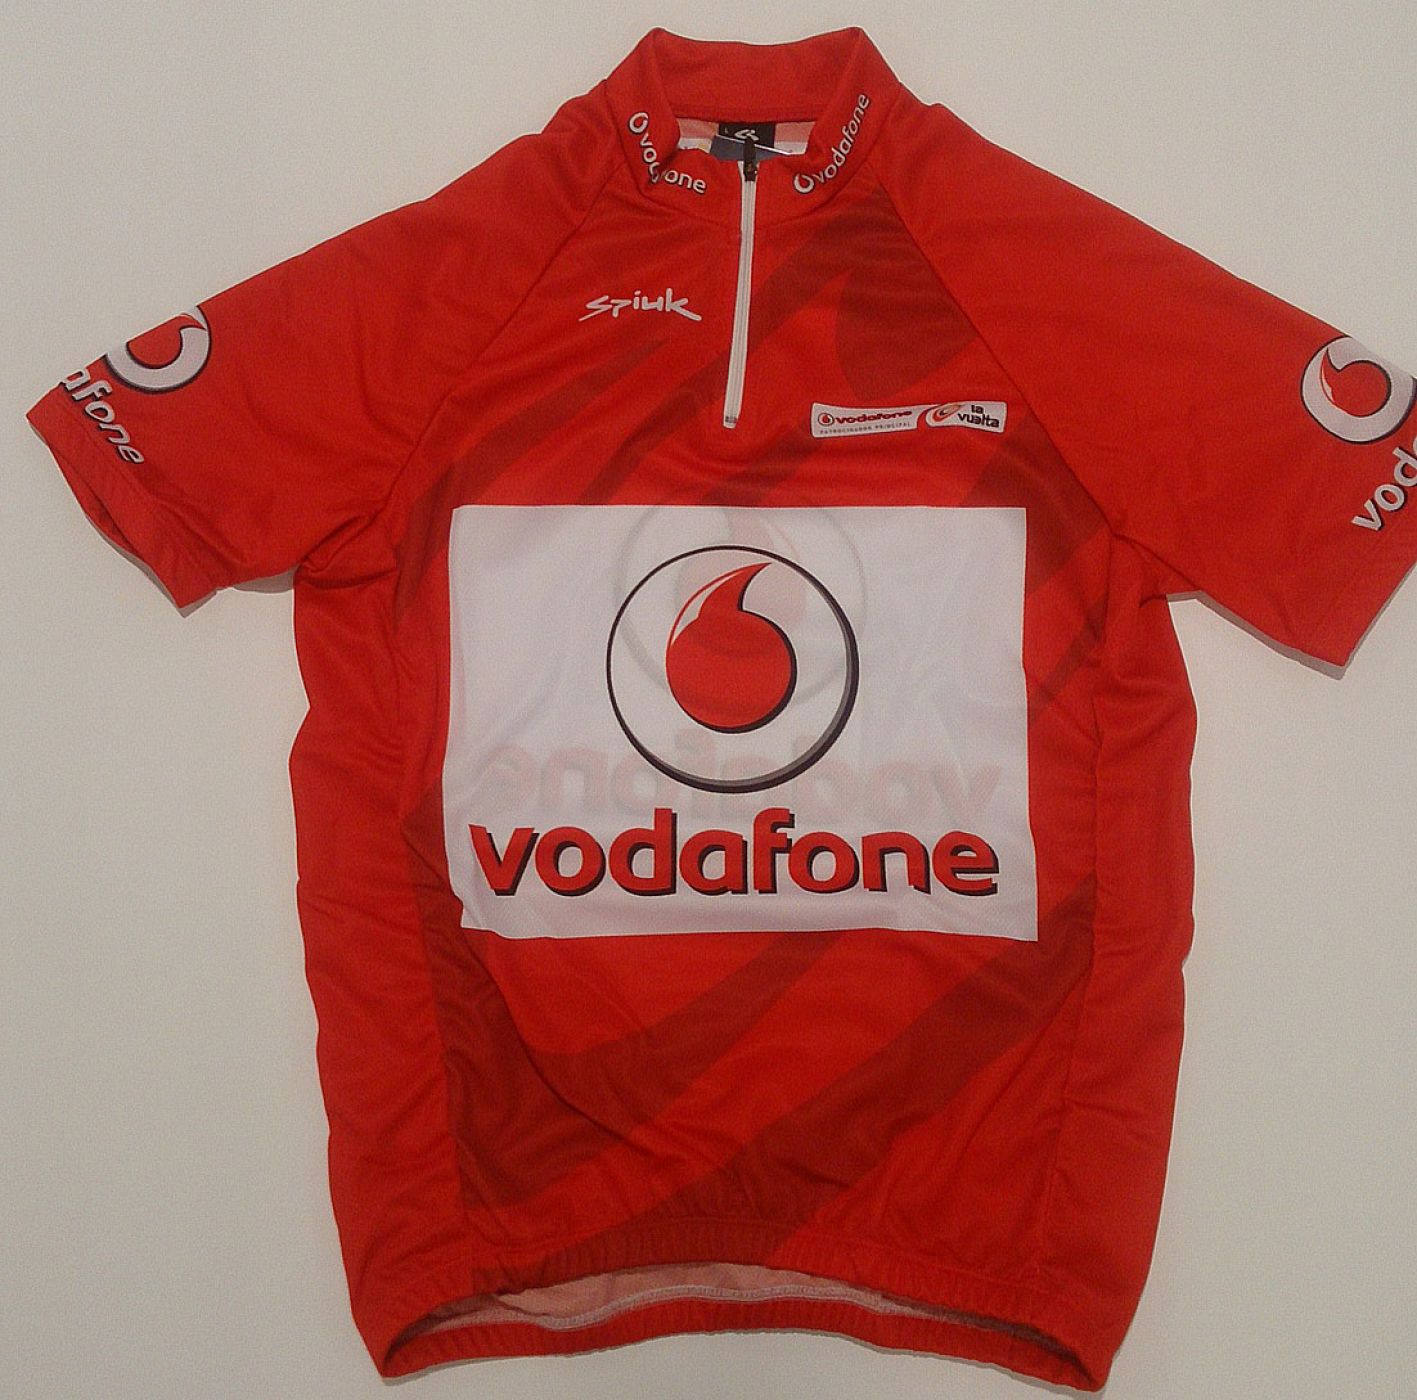 Imagen del maillot rojo de la Vuelta ciclista a España 2016.